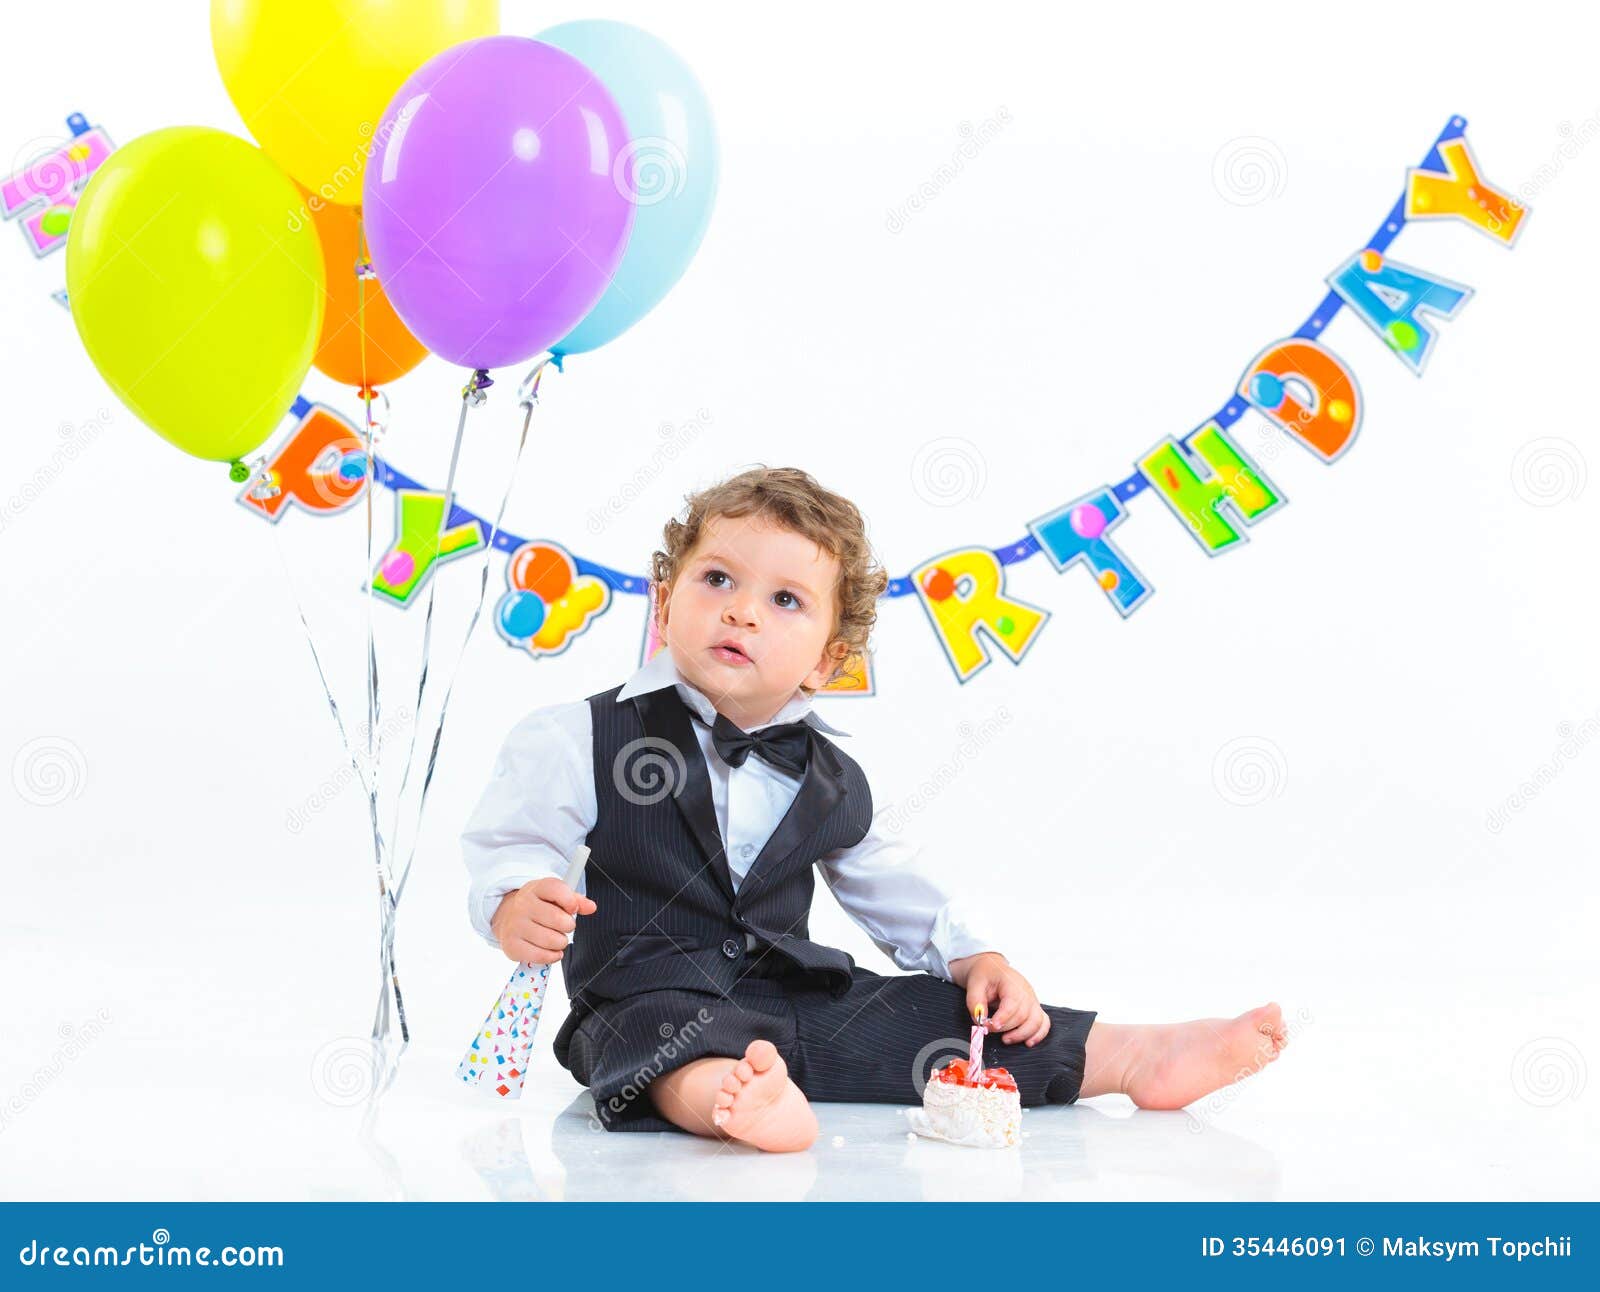 De Eerste Verjaardag Van Babys één Jaar. Stock Afbeelding - Image of ...